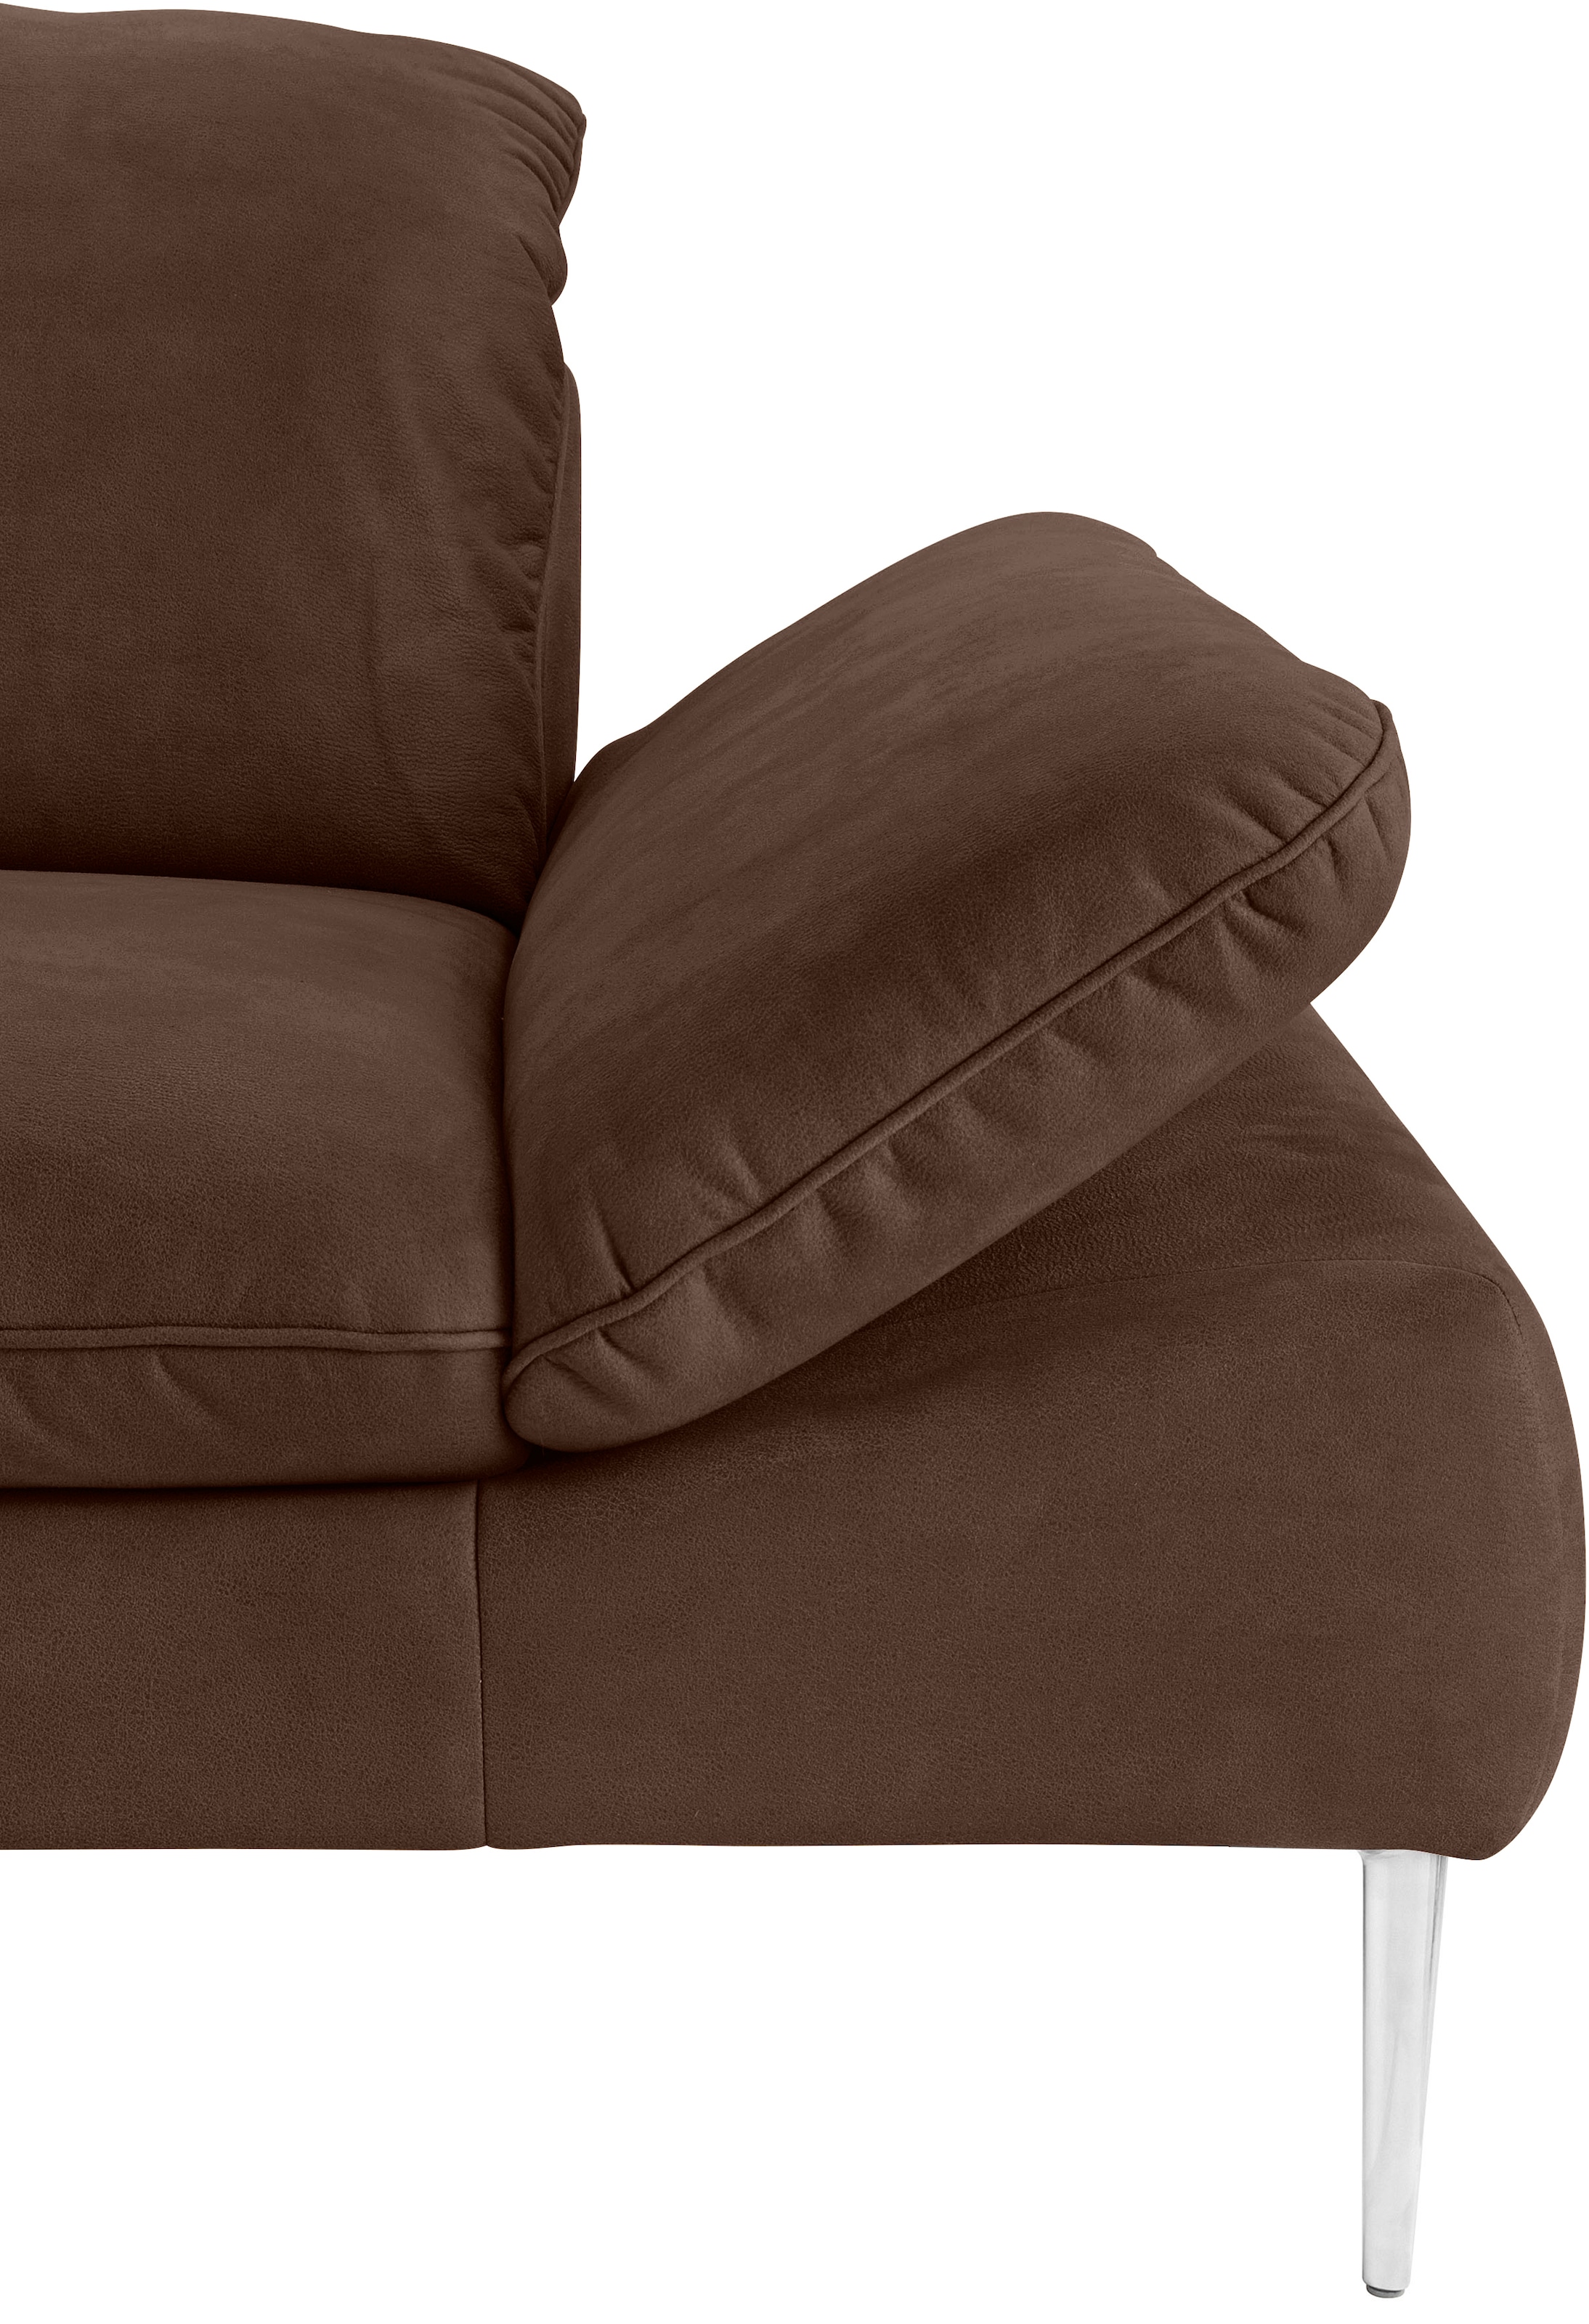 W.SCHILLIG 2-Sitzer »enjoy&MORE«, mit Sitztiefenverstellung, Füße Chrom glänzend, Breite 202 cm